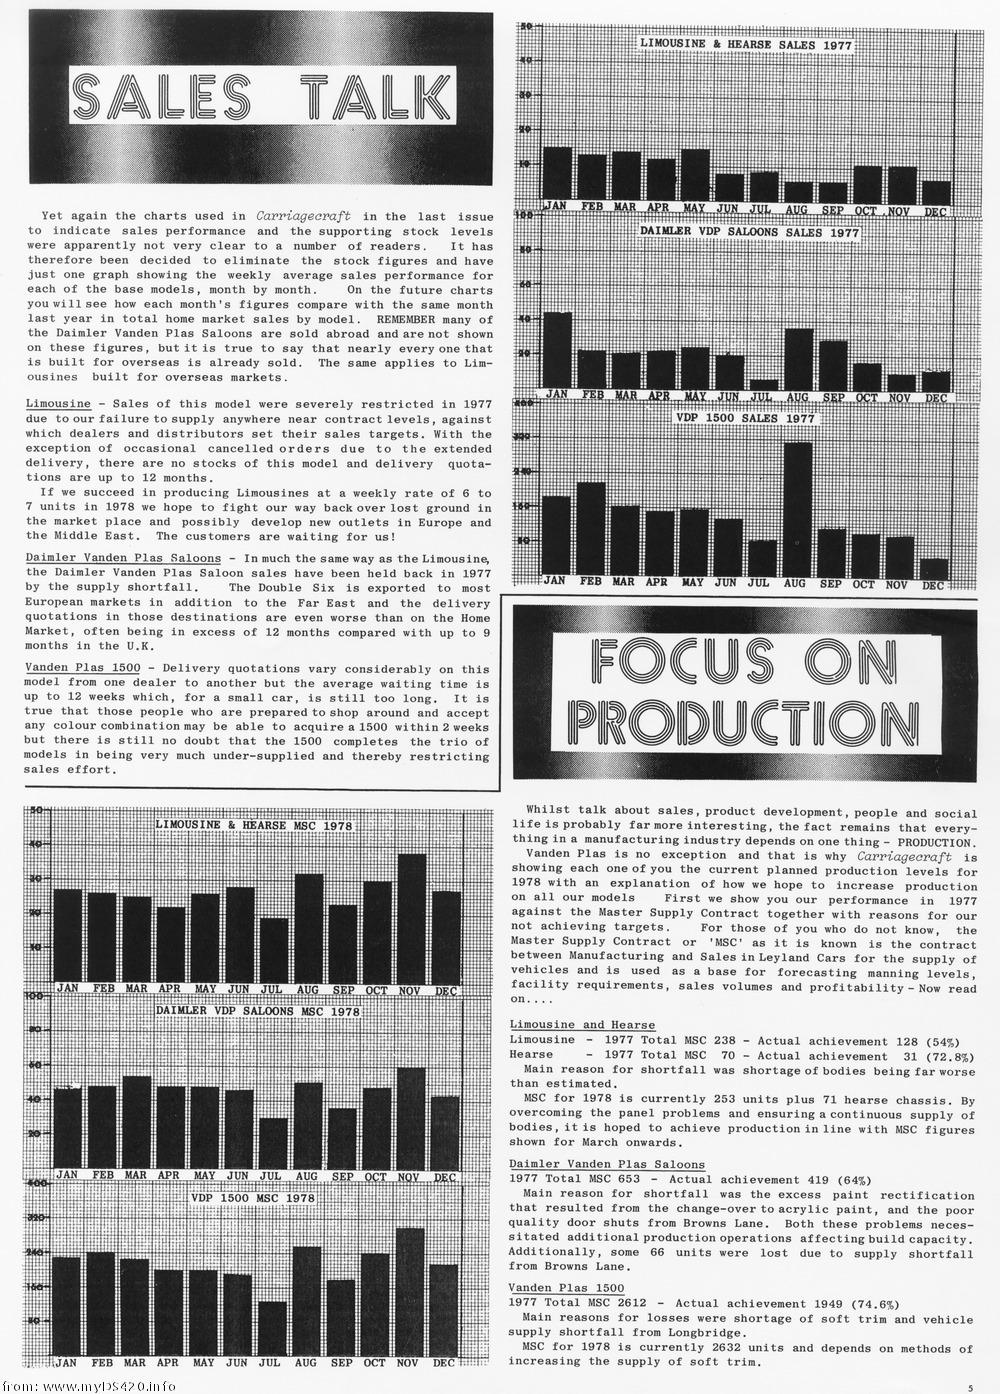 Weekly sales 1977